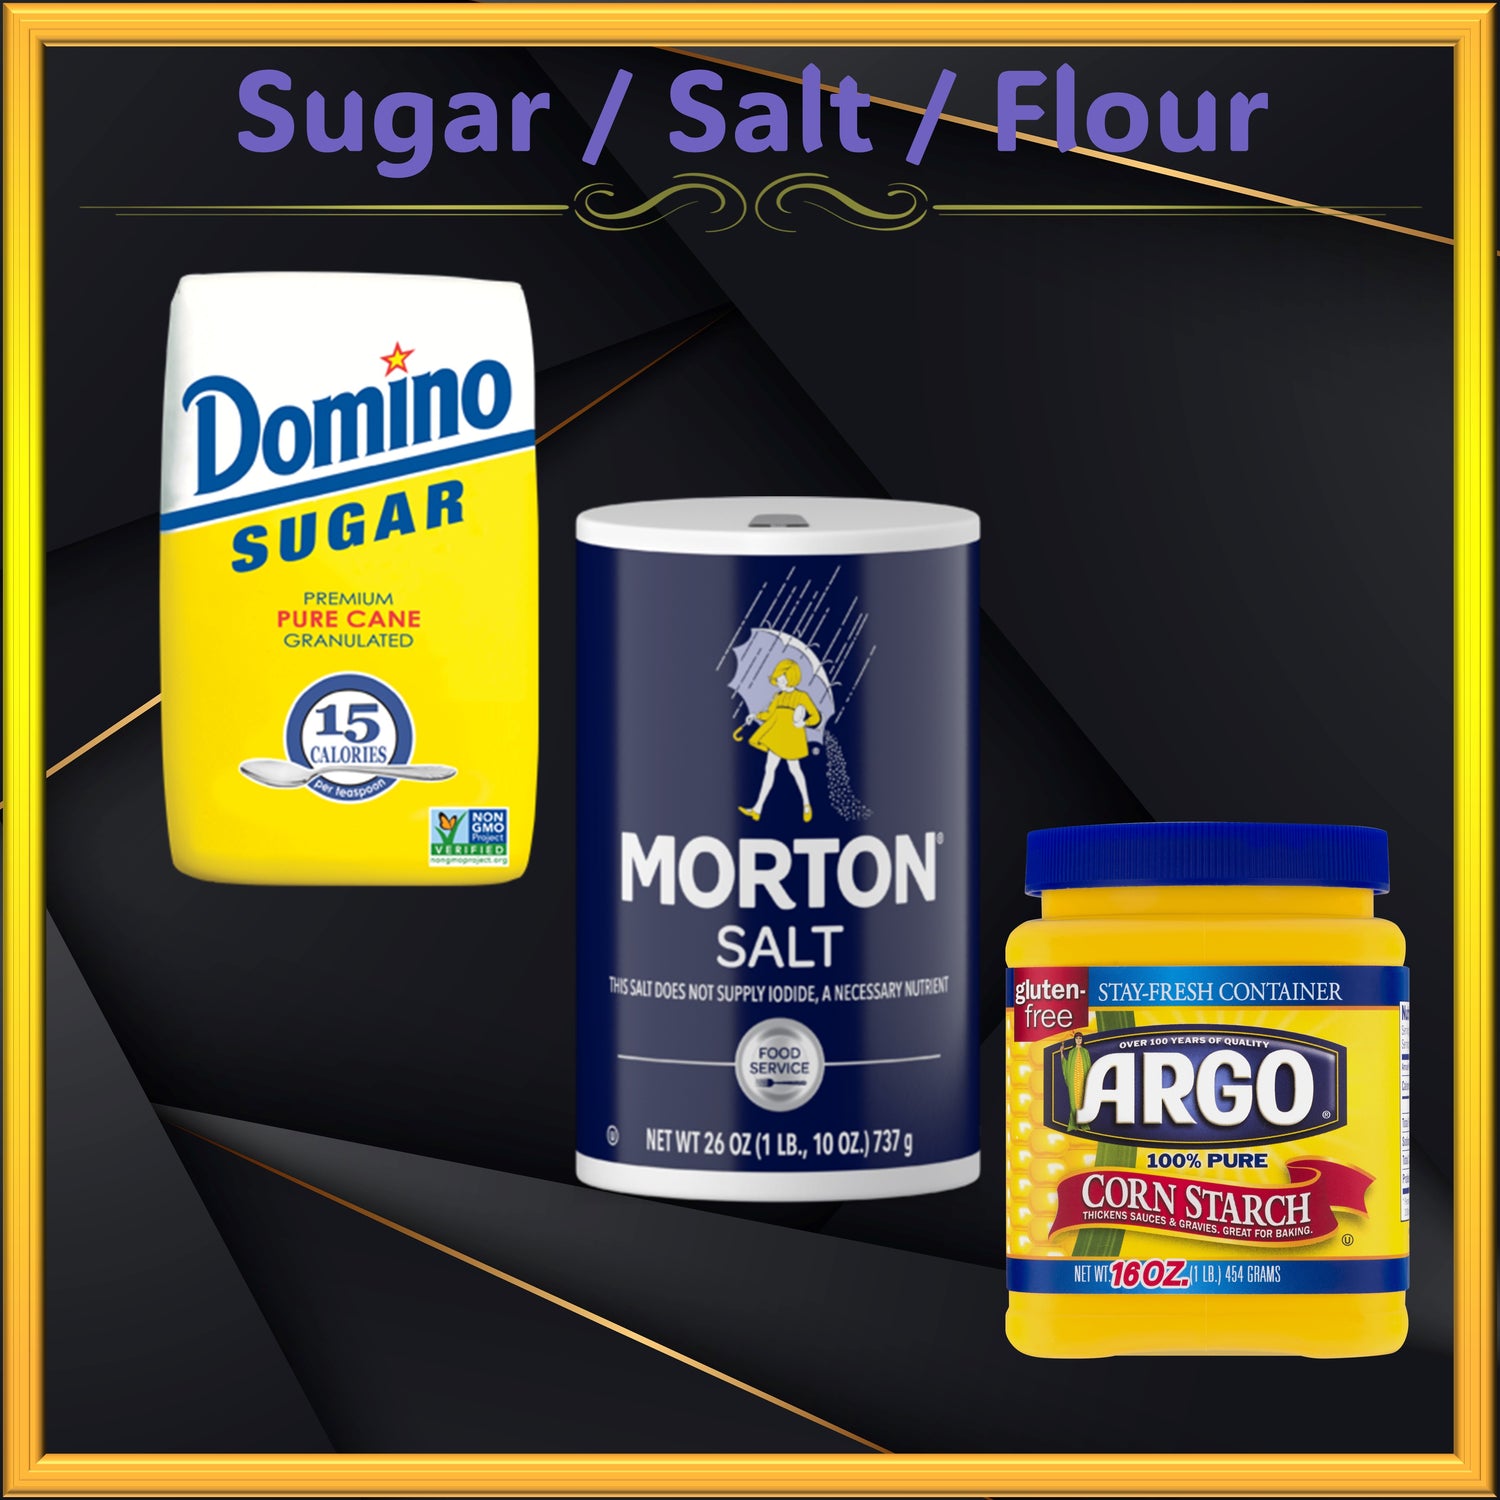 Sugar / Salt / Flour